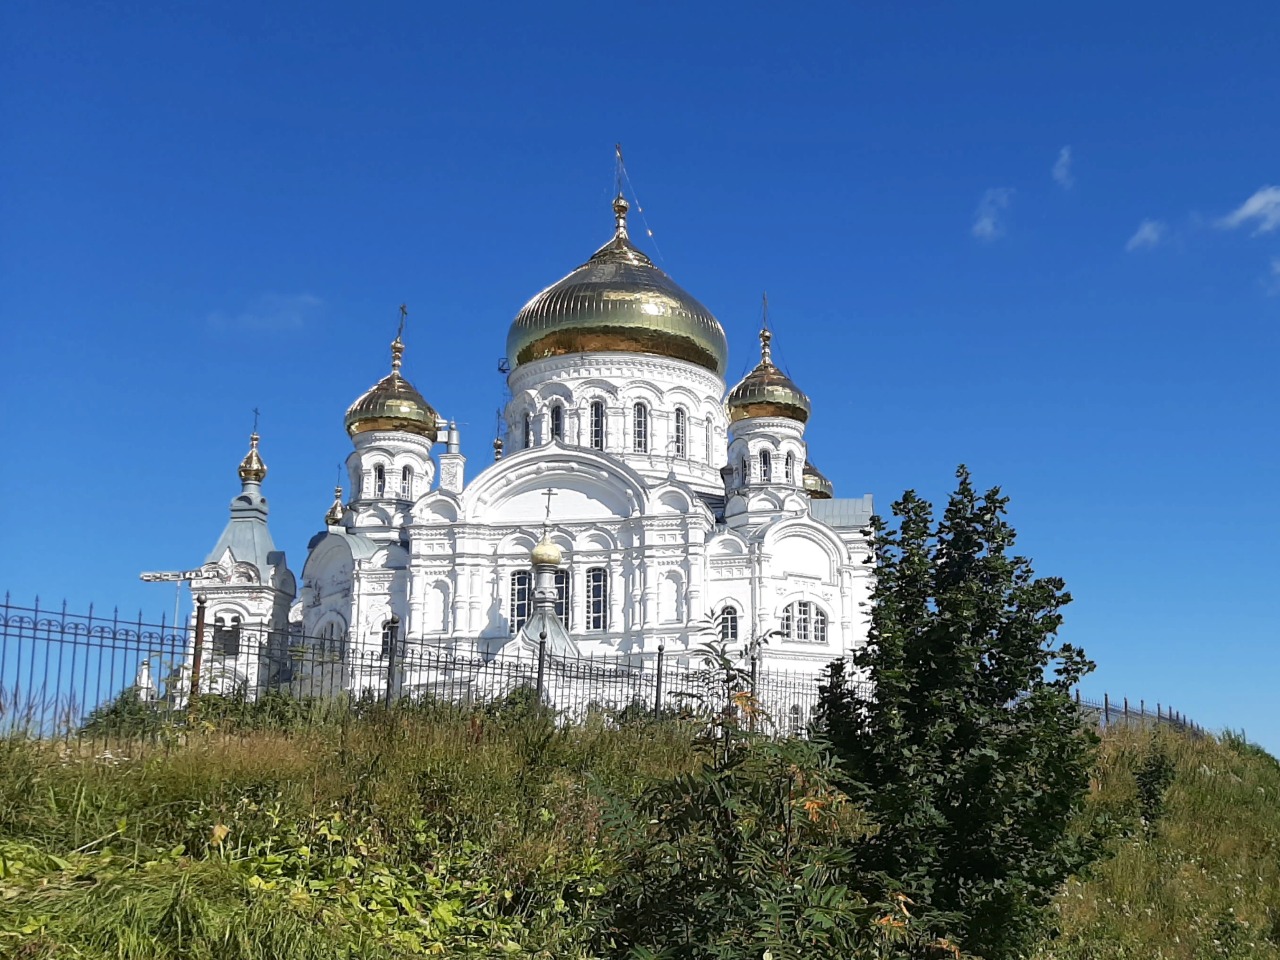 Белогорский монастырь — Уральский Афон | Цена 11500₽, отзывы, описание экскурсии